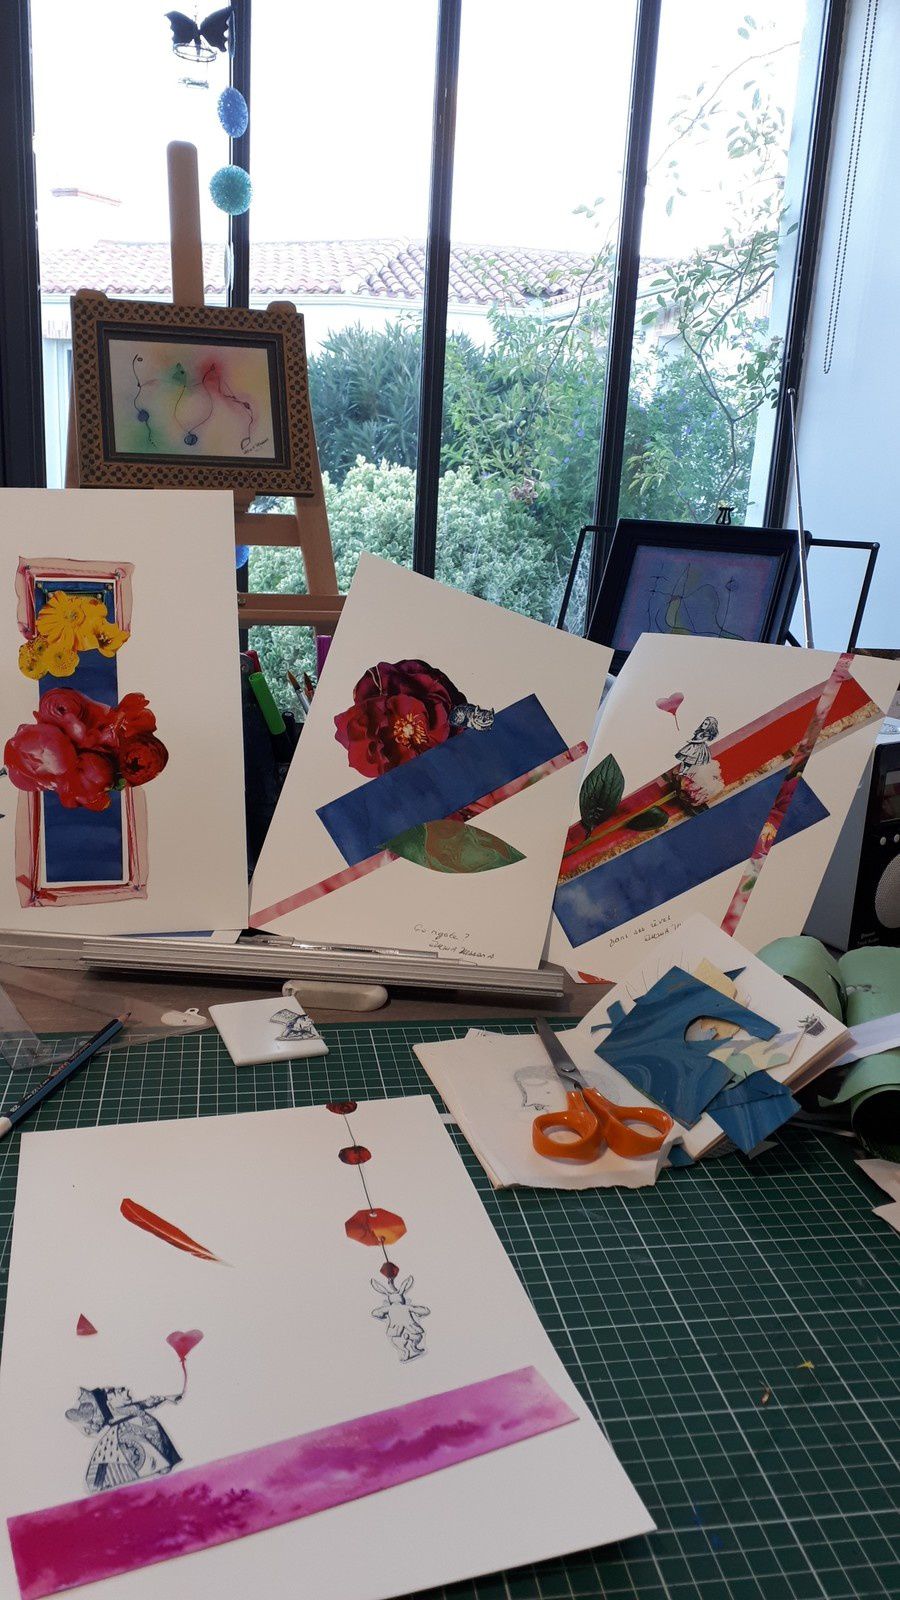 Les Collages d'eMmA MessanA, la série "Alice" sur la table de l'atelier de Saint-Urbain 8 novembre 2019